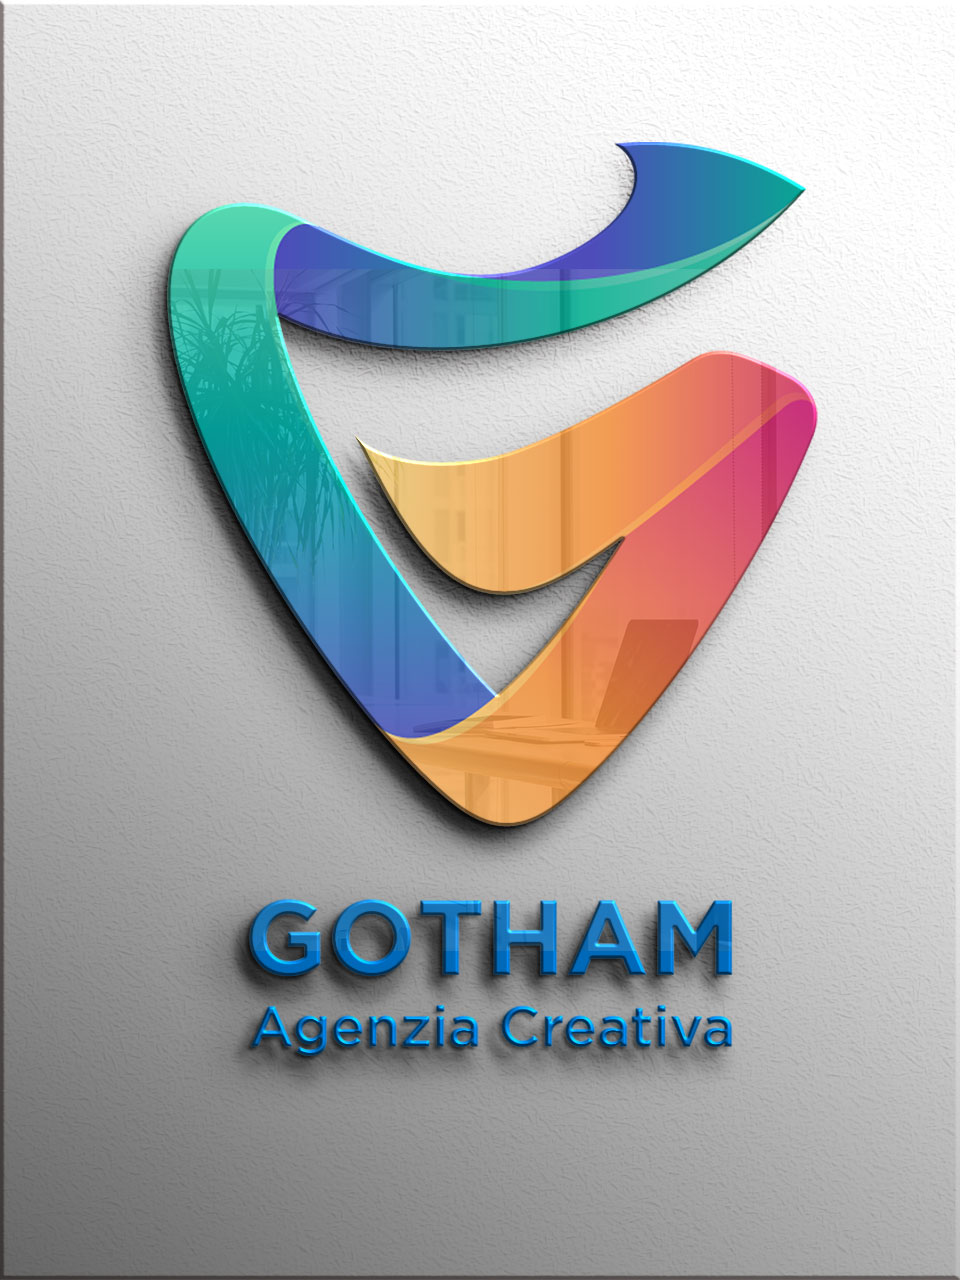 gotham-agenzia-creativa-wall-mockup